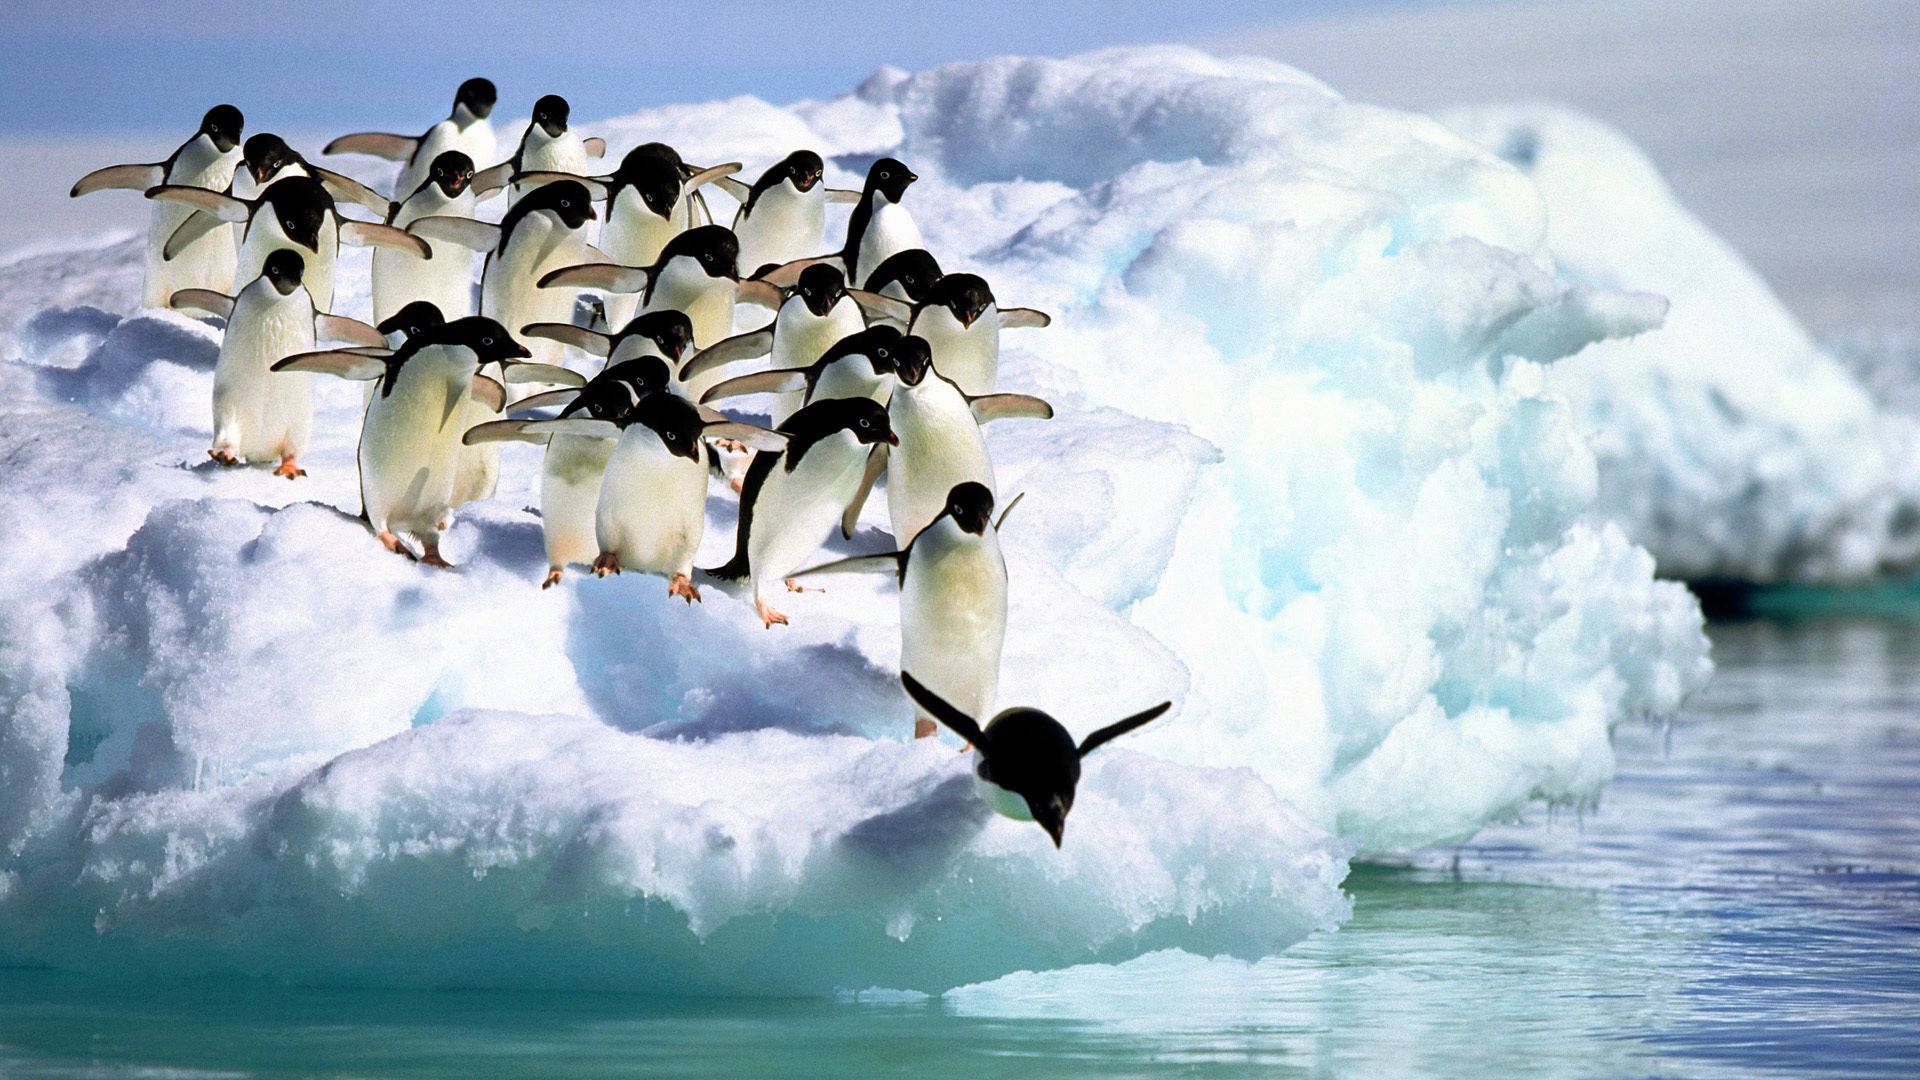 151038 Salvapantallas y fondos de pantalla Nieve en tu teléfono. Descarga imágenes de agua, animales, pingüinos gratis